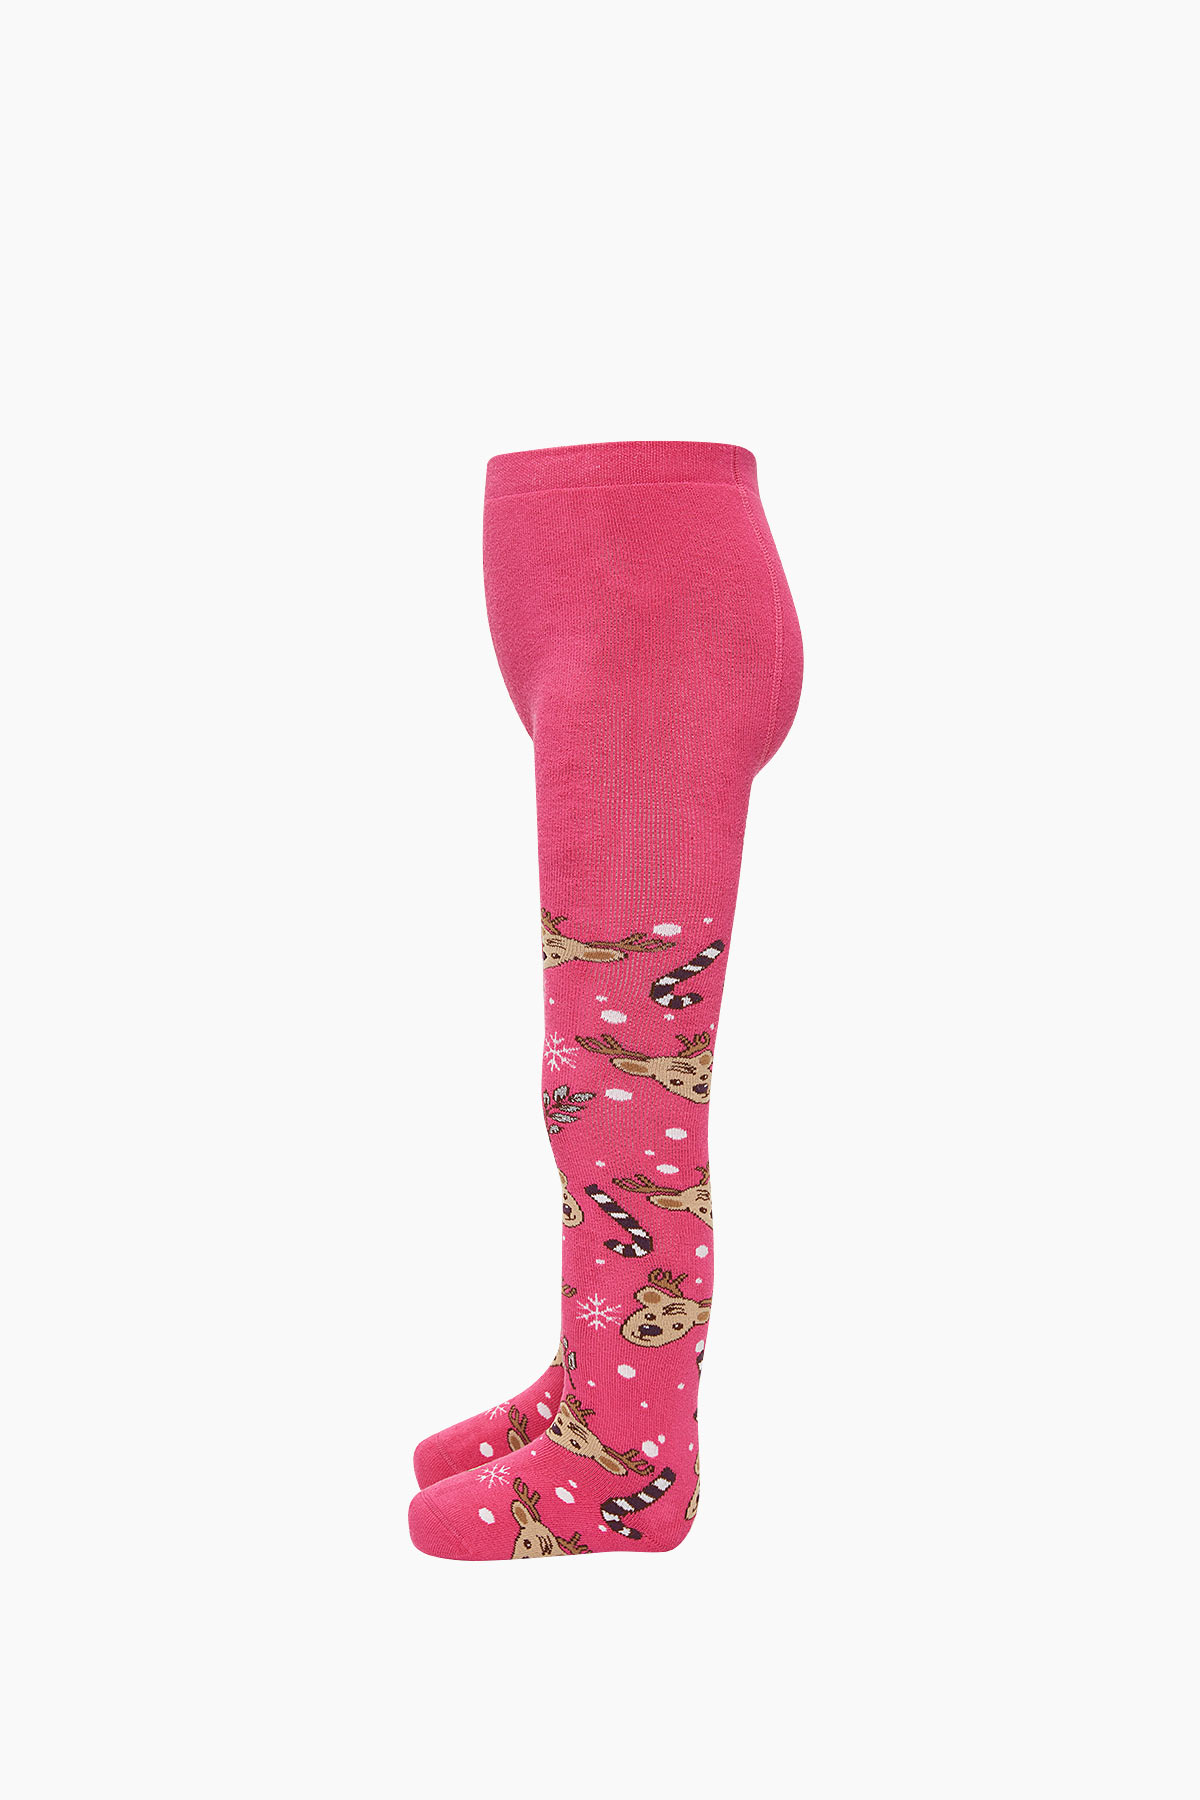 Bross Yılbaşı Geyik Desenli Havlu Külotlu Çocuk Çorabı